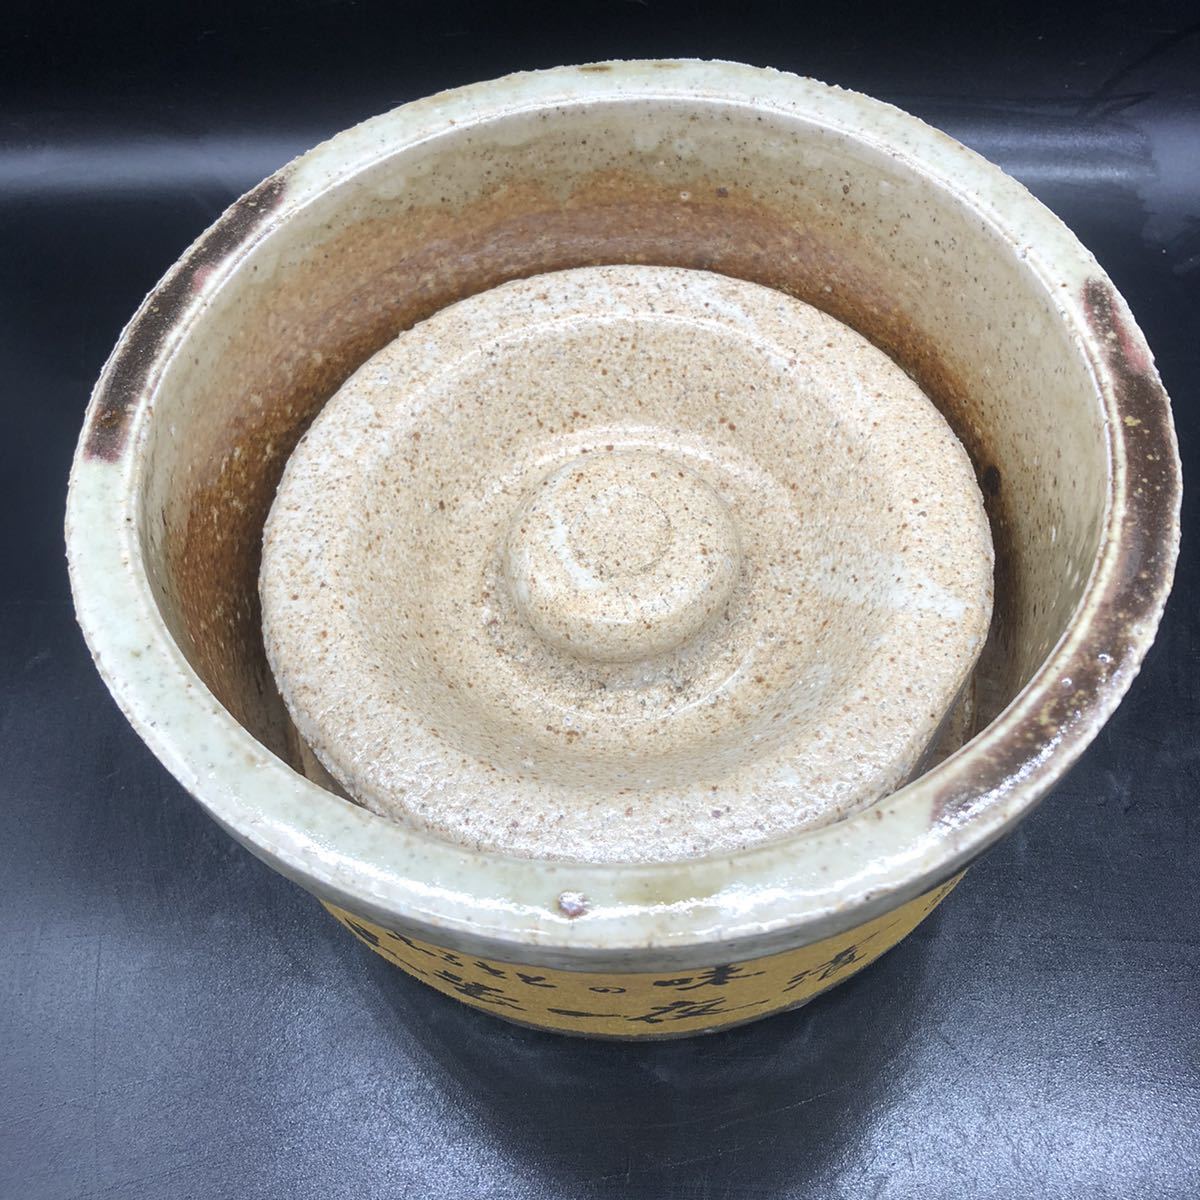  один ночь . горшок ..... тест .. -слойный камень имеется солености tsukemono инструмент солености tsukemono контейнер не использовался керамика контейнер посуда O33